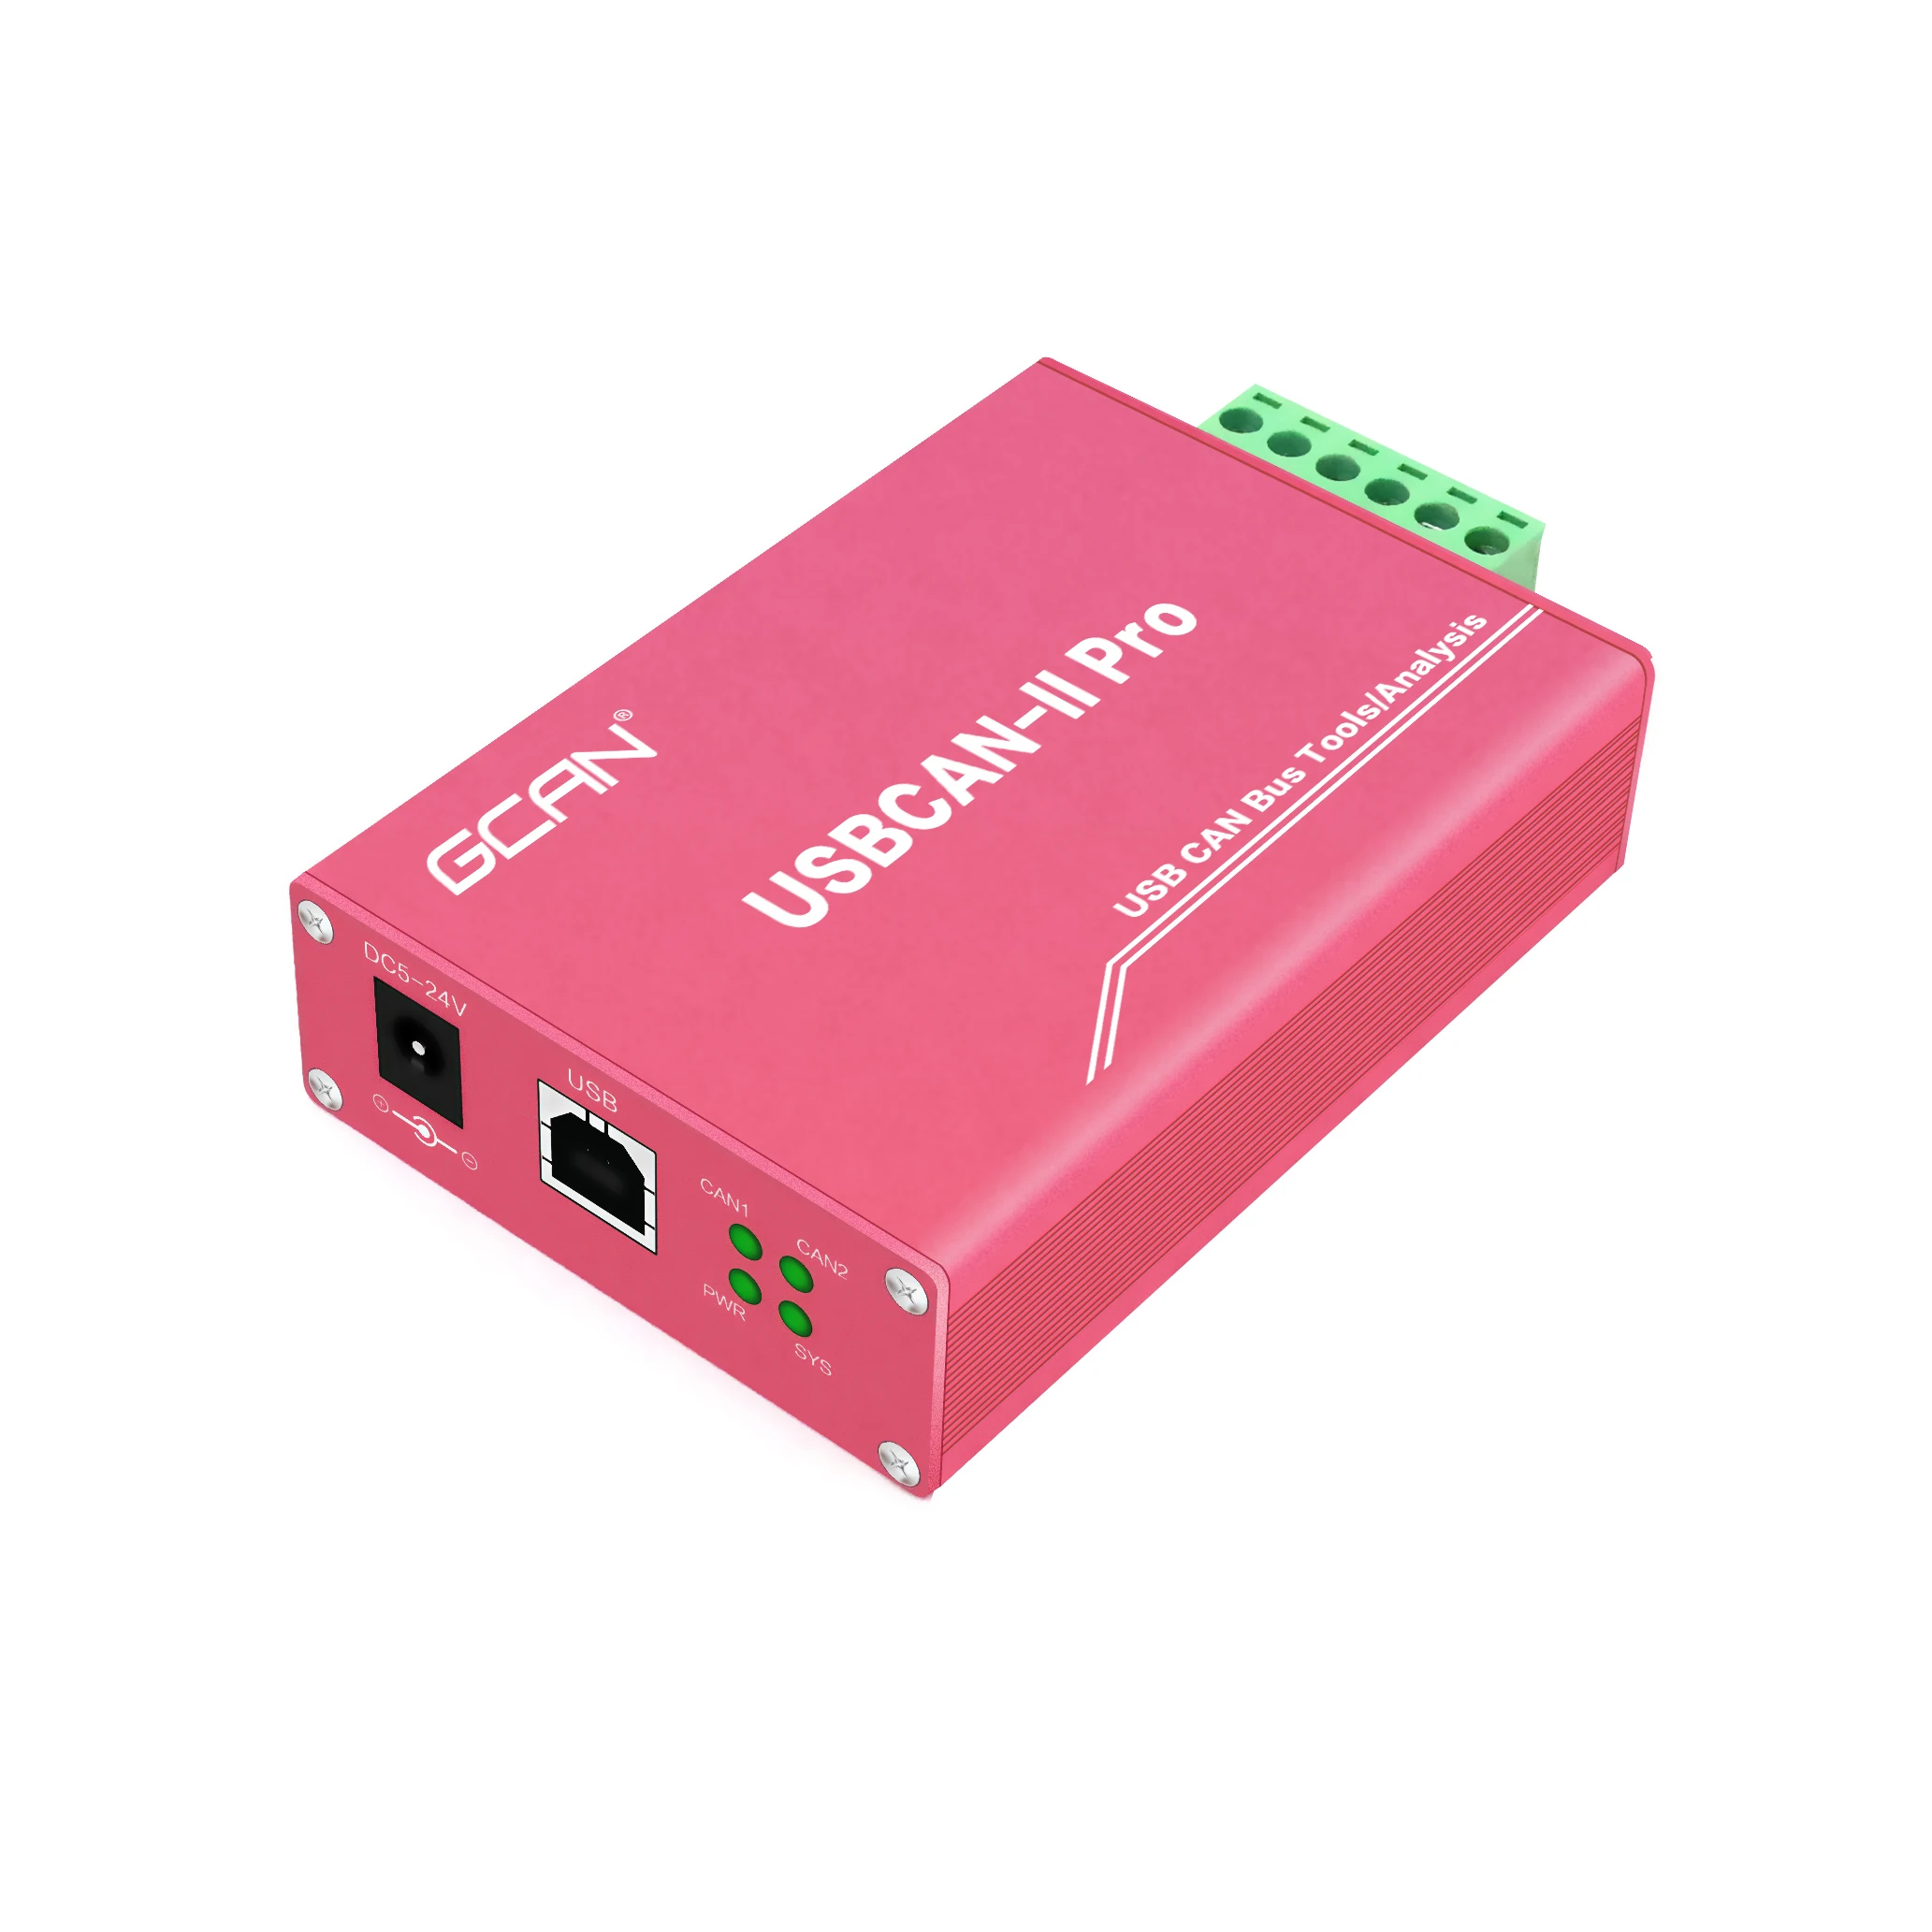 

Адаптер для кабеля питания USBCAN-II Pro 5 В, адаптер CAN-шины для анализа автомобильных деталей с 2 каналами